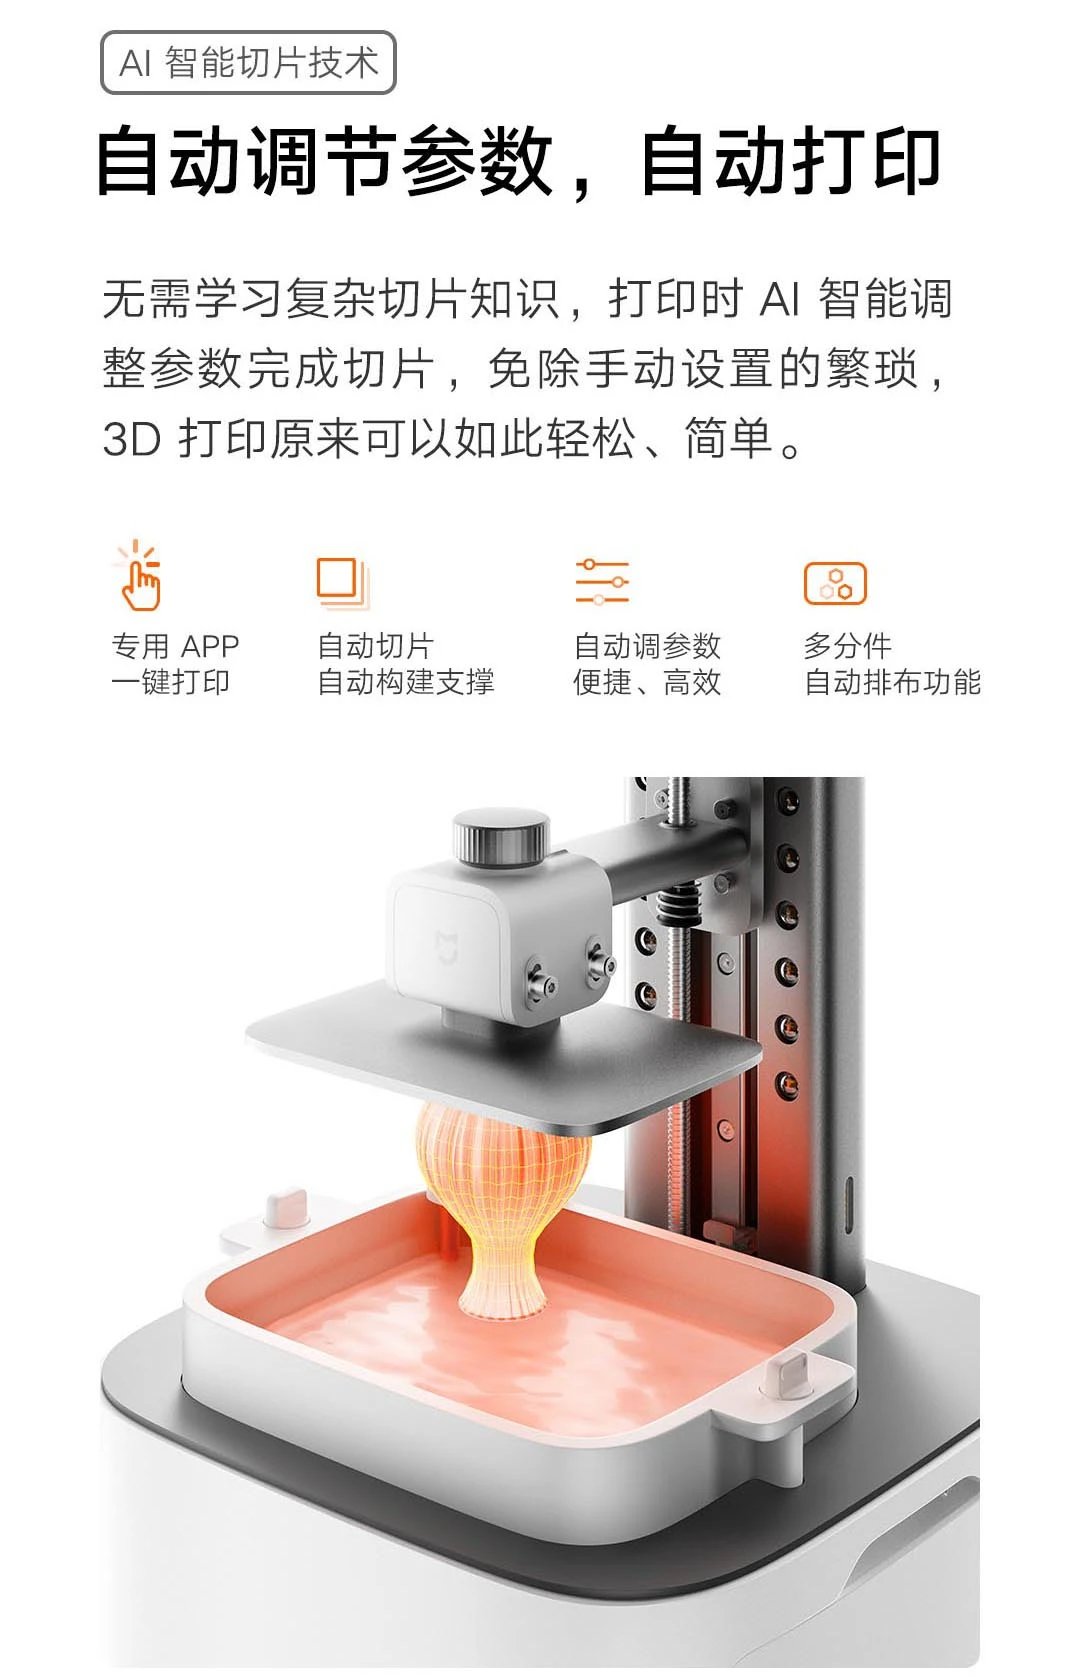 Xiaomi представила свой первый 3D-принтер (wcfu4yn4hzam)